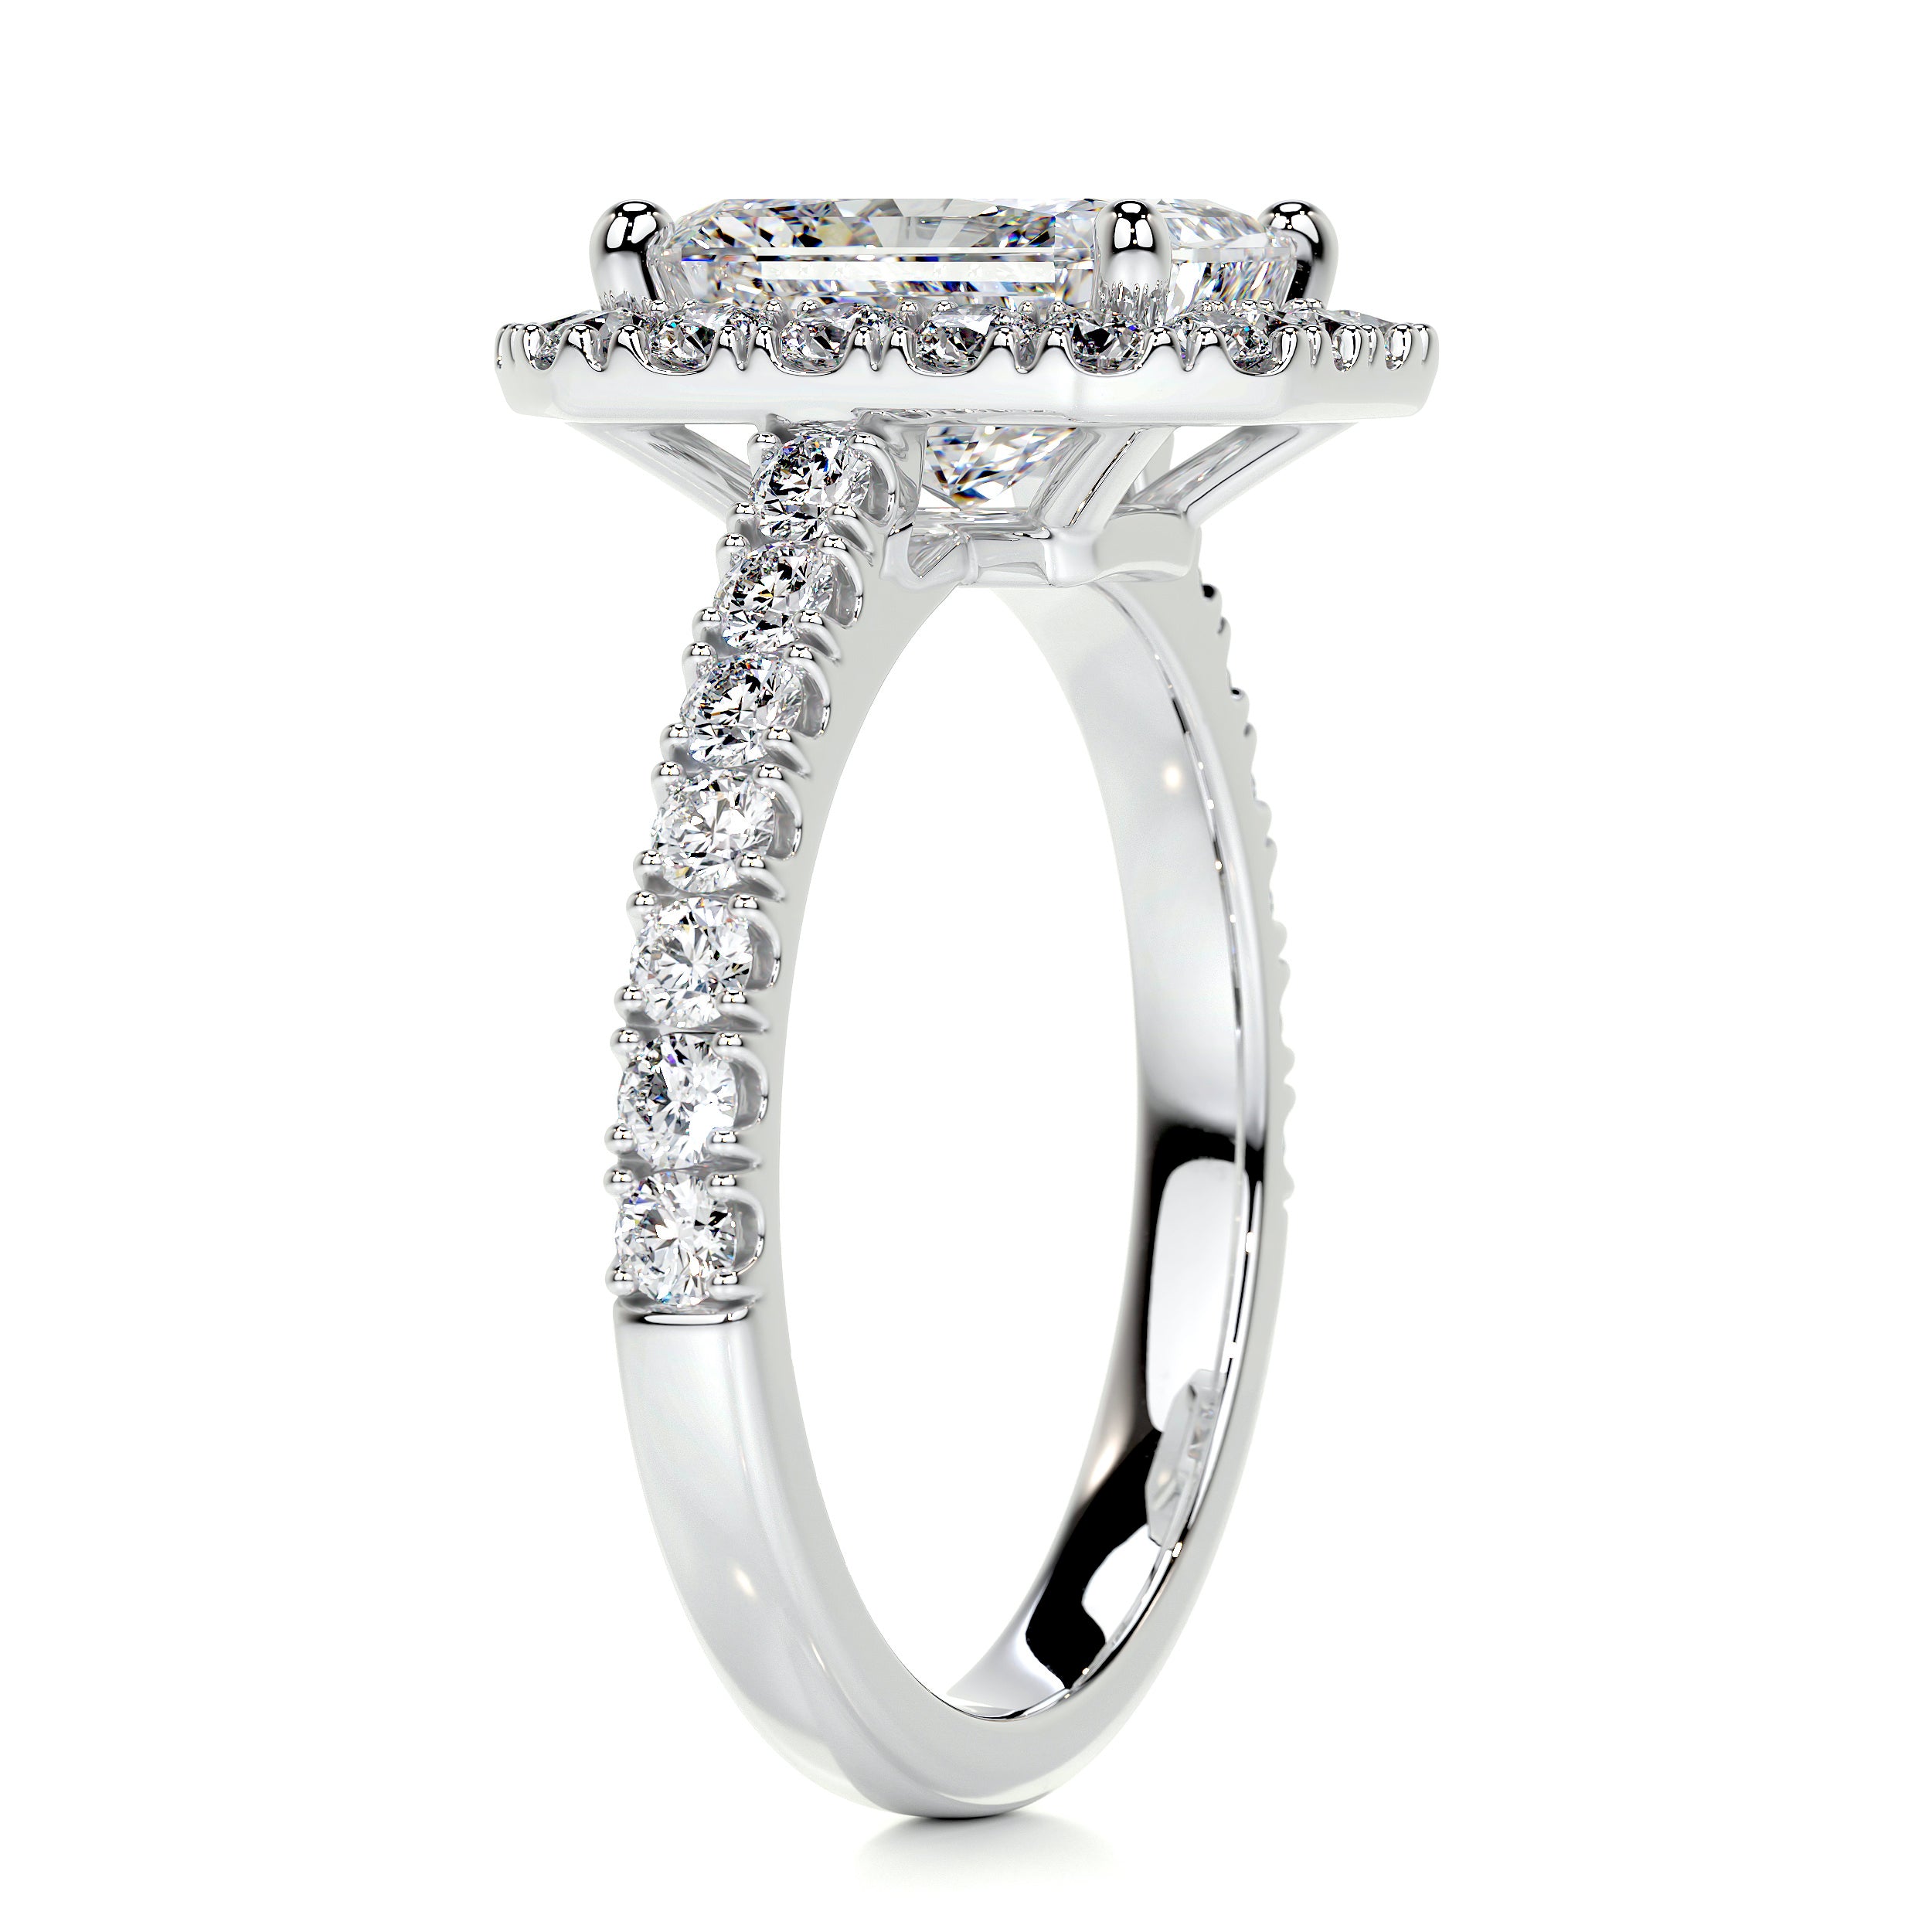 Andrea Diamond Engagement Ring   (2.25 Carat) -Platinum